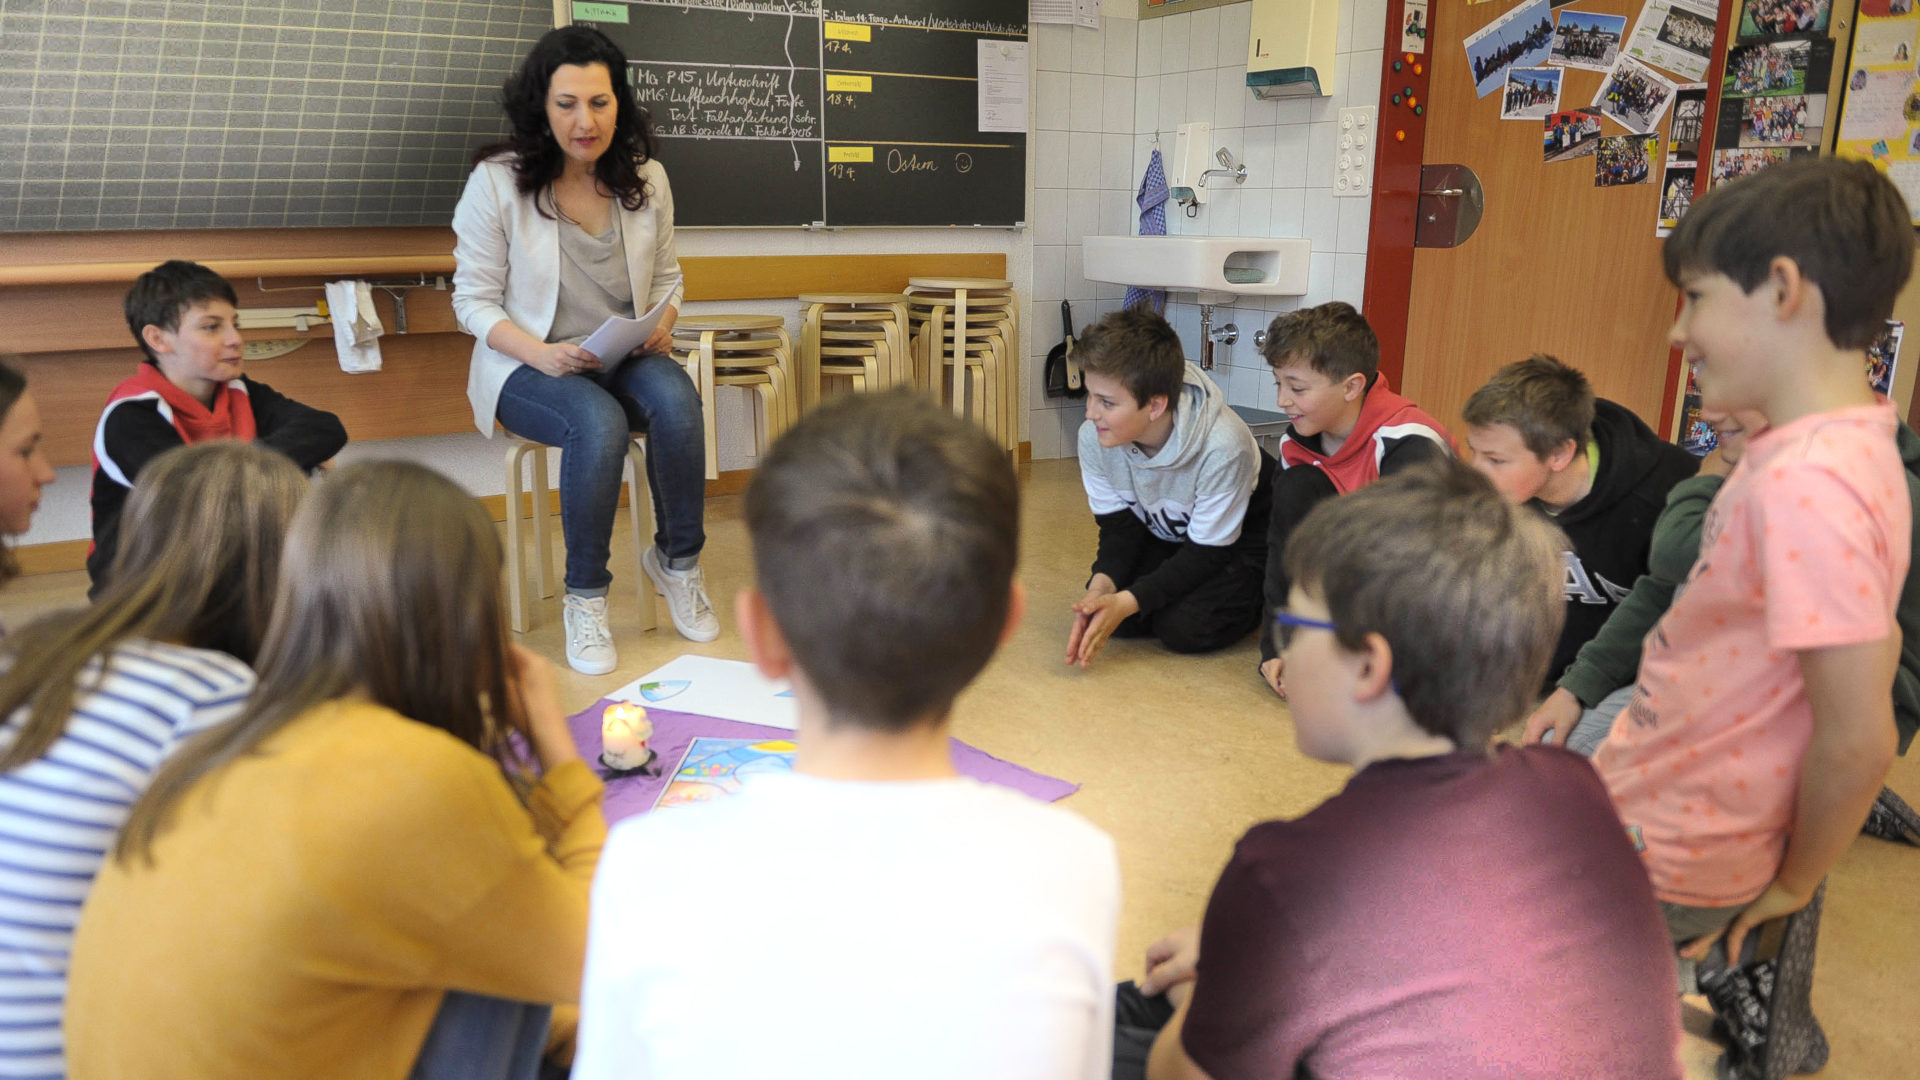 Katechetin Jasminka Sakac bespricht mit den Schülern im Unterricht, was Ostern mit ihnen zu tun hat.